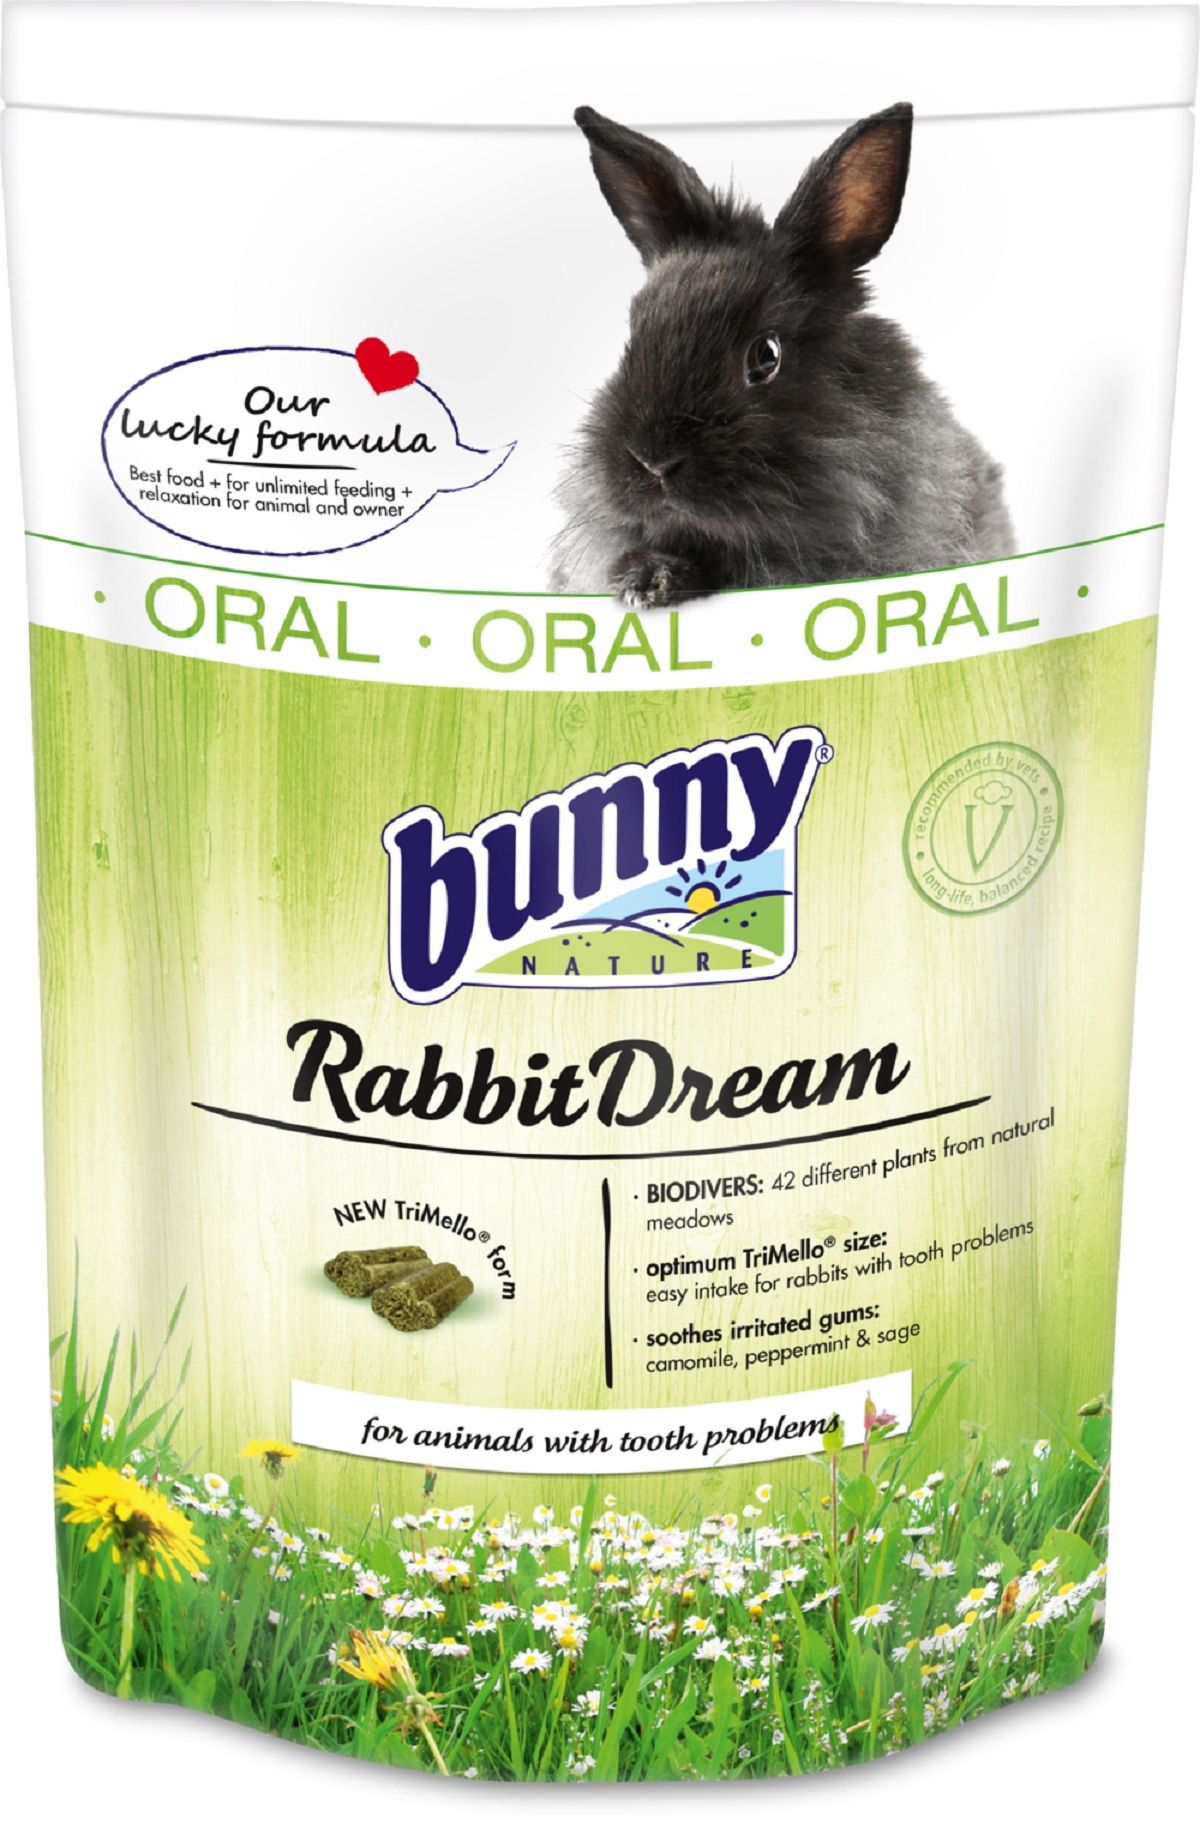 BUNNY RabbitDream Oral Alimento completo para conejos enanos con problemas dentales